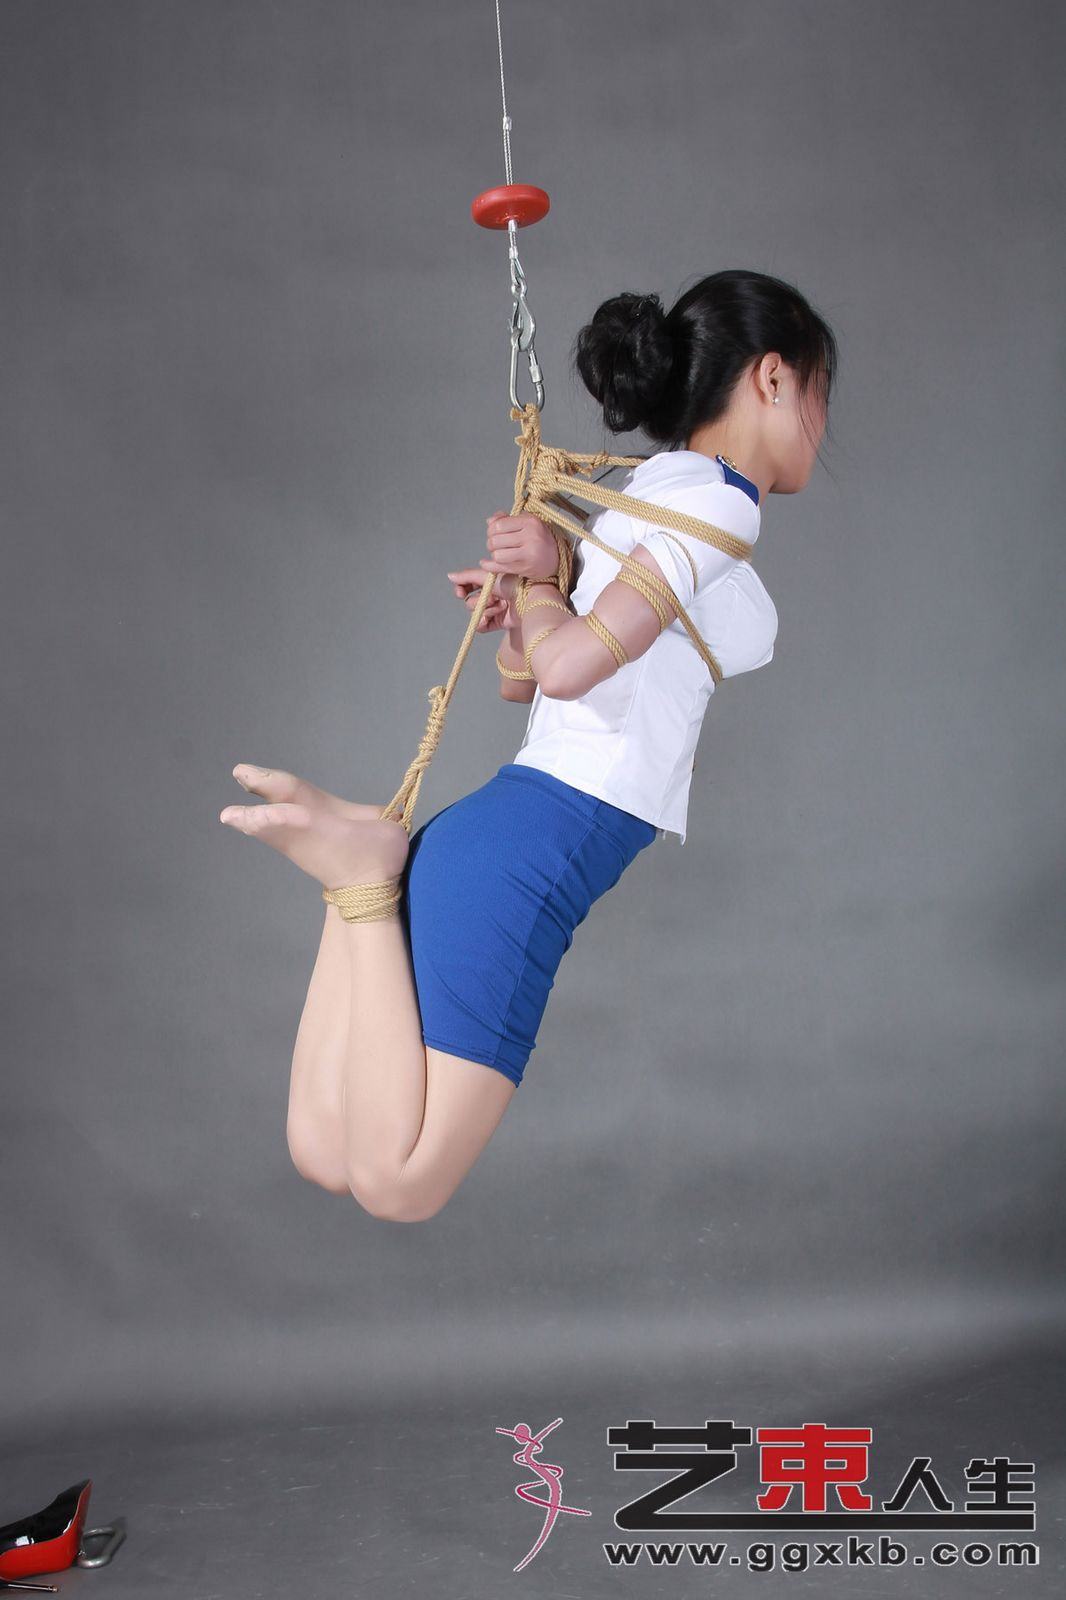 Chinese Art Rope Life 16